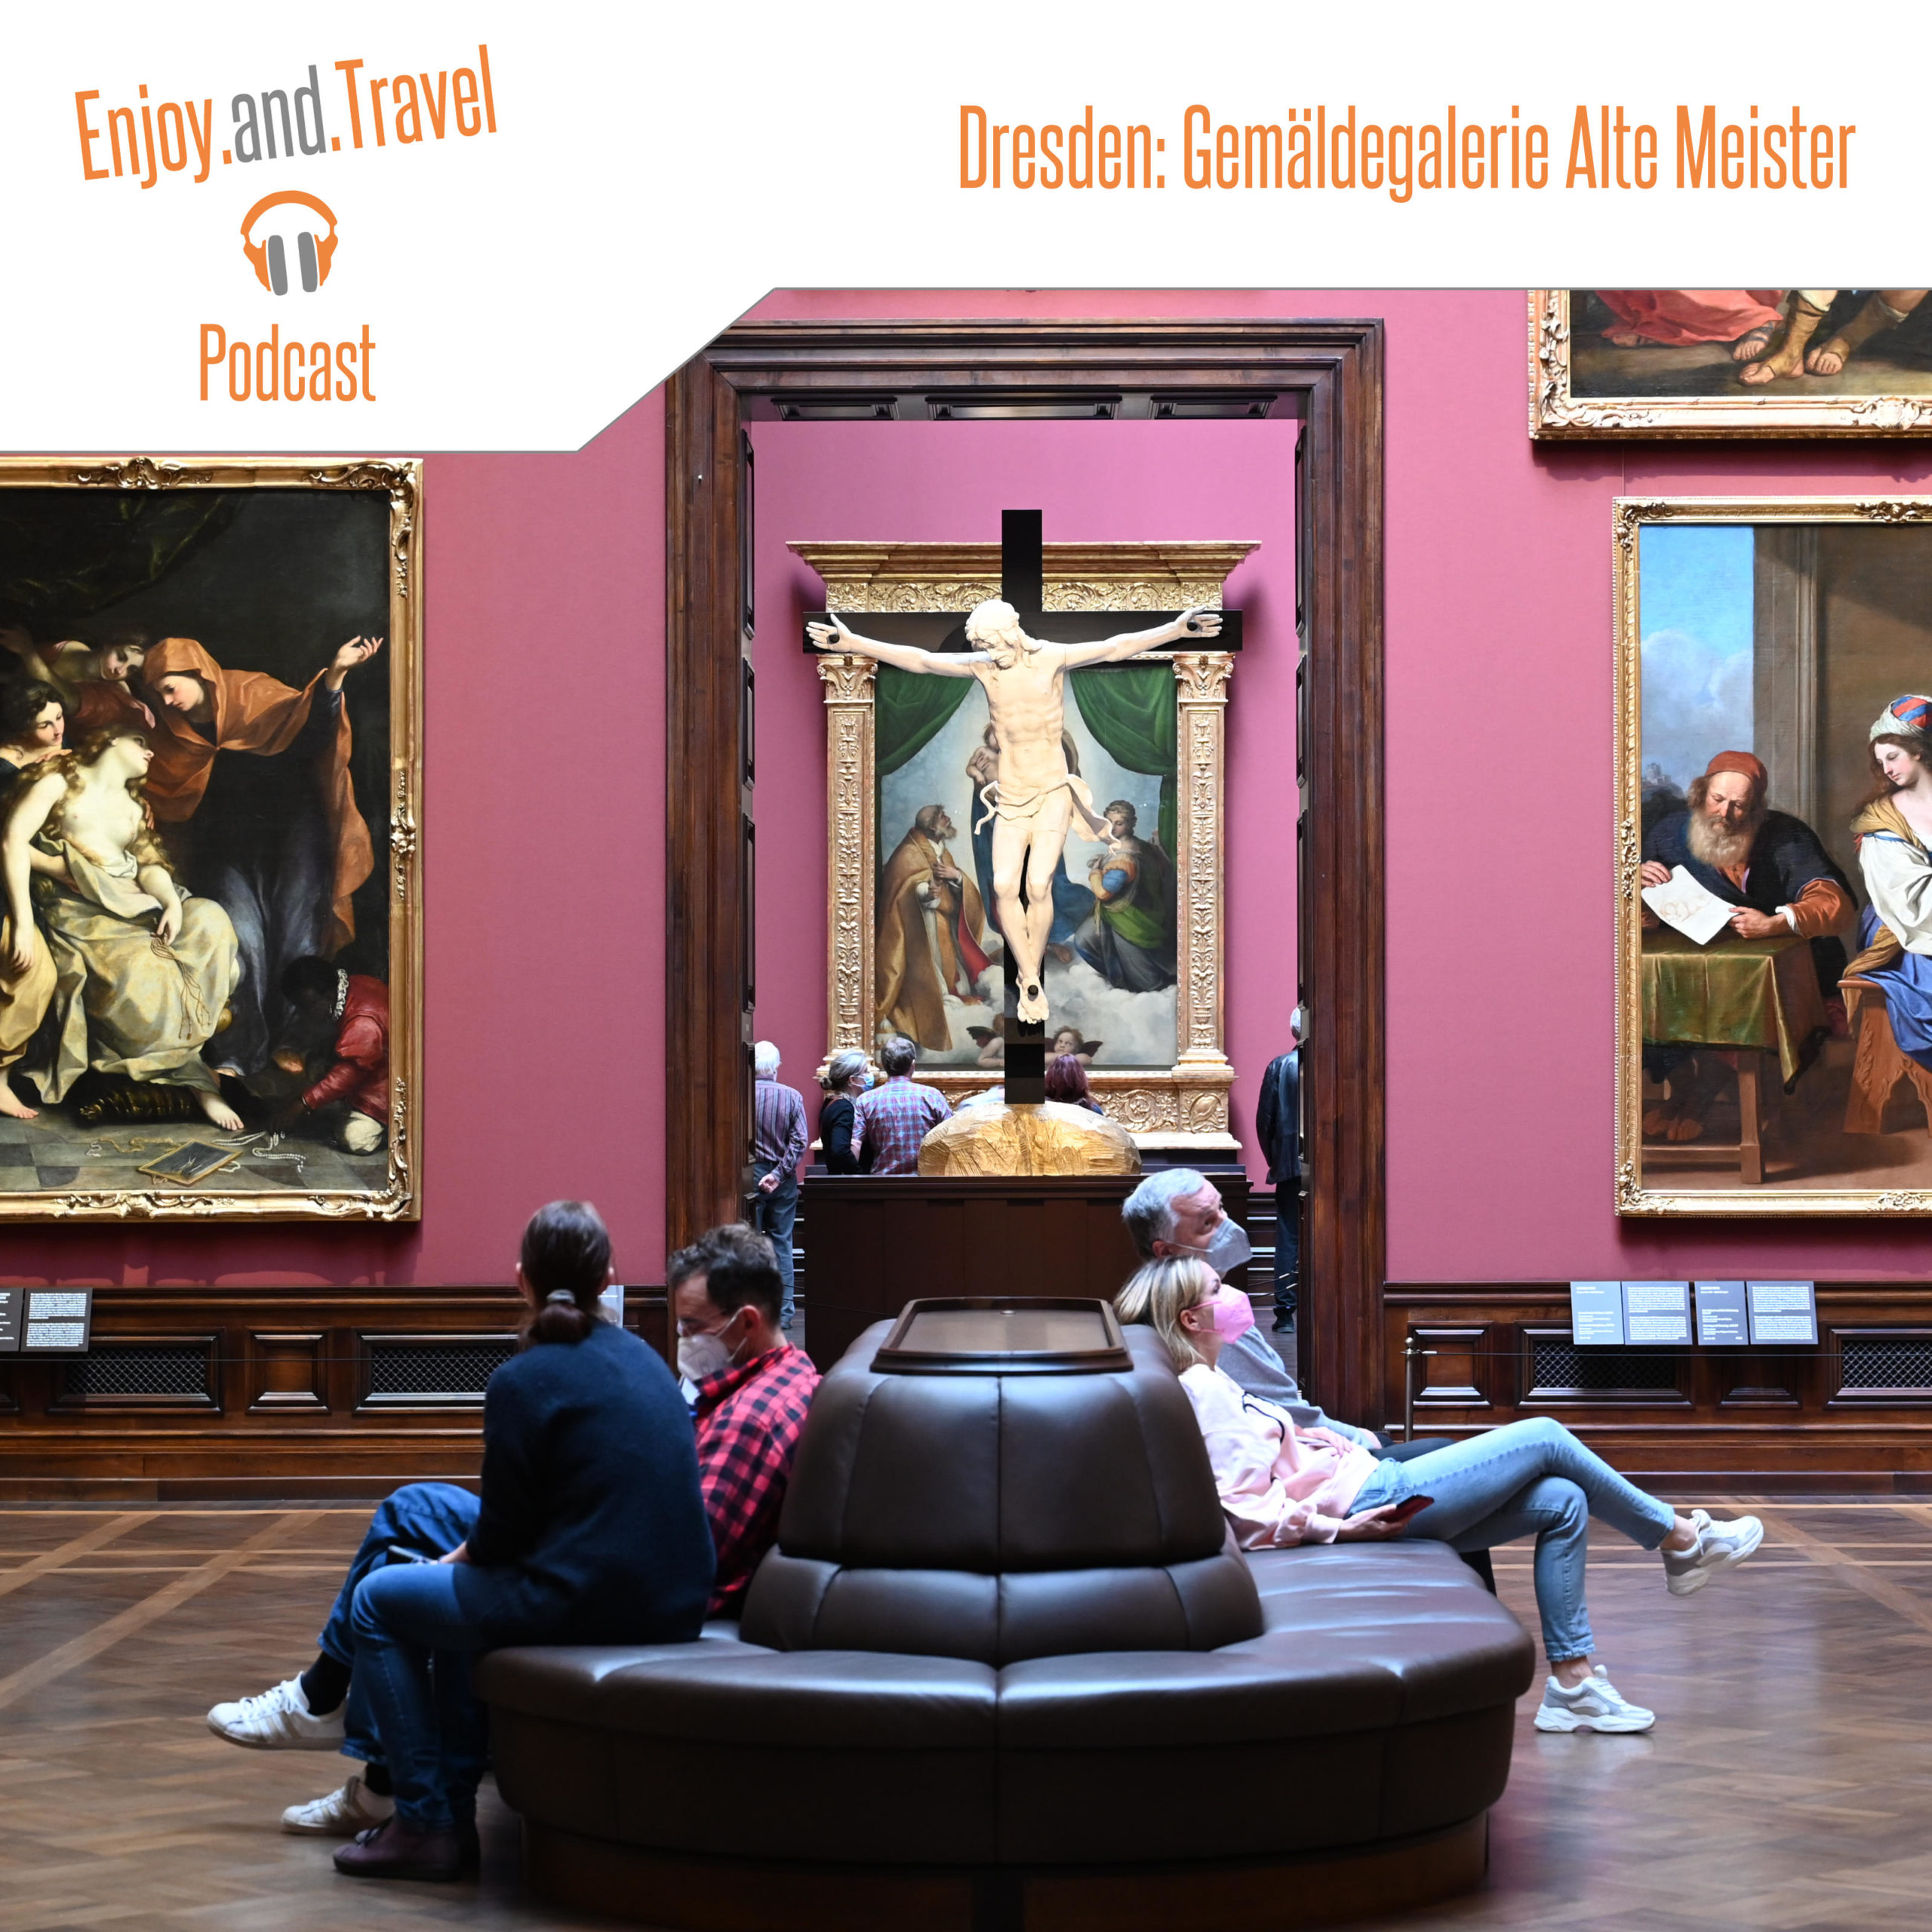 Menschen sitzen entspannt auf einer großen Couch und bewundern die Gemälde in Dresdens Gemäldegalerie »Alte Meister«